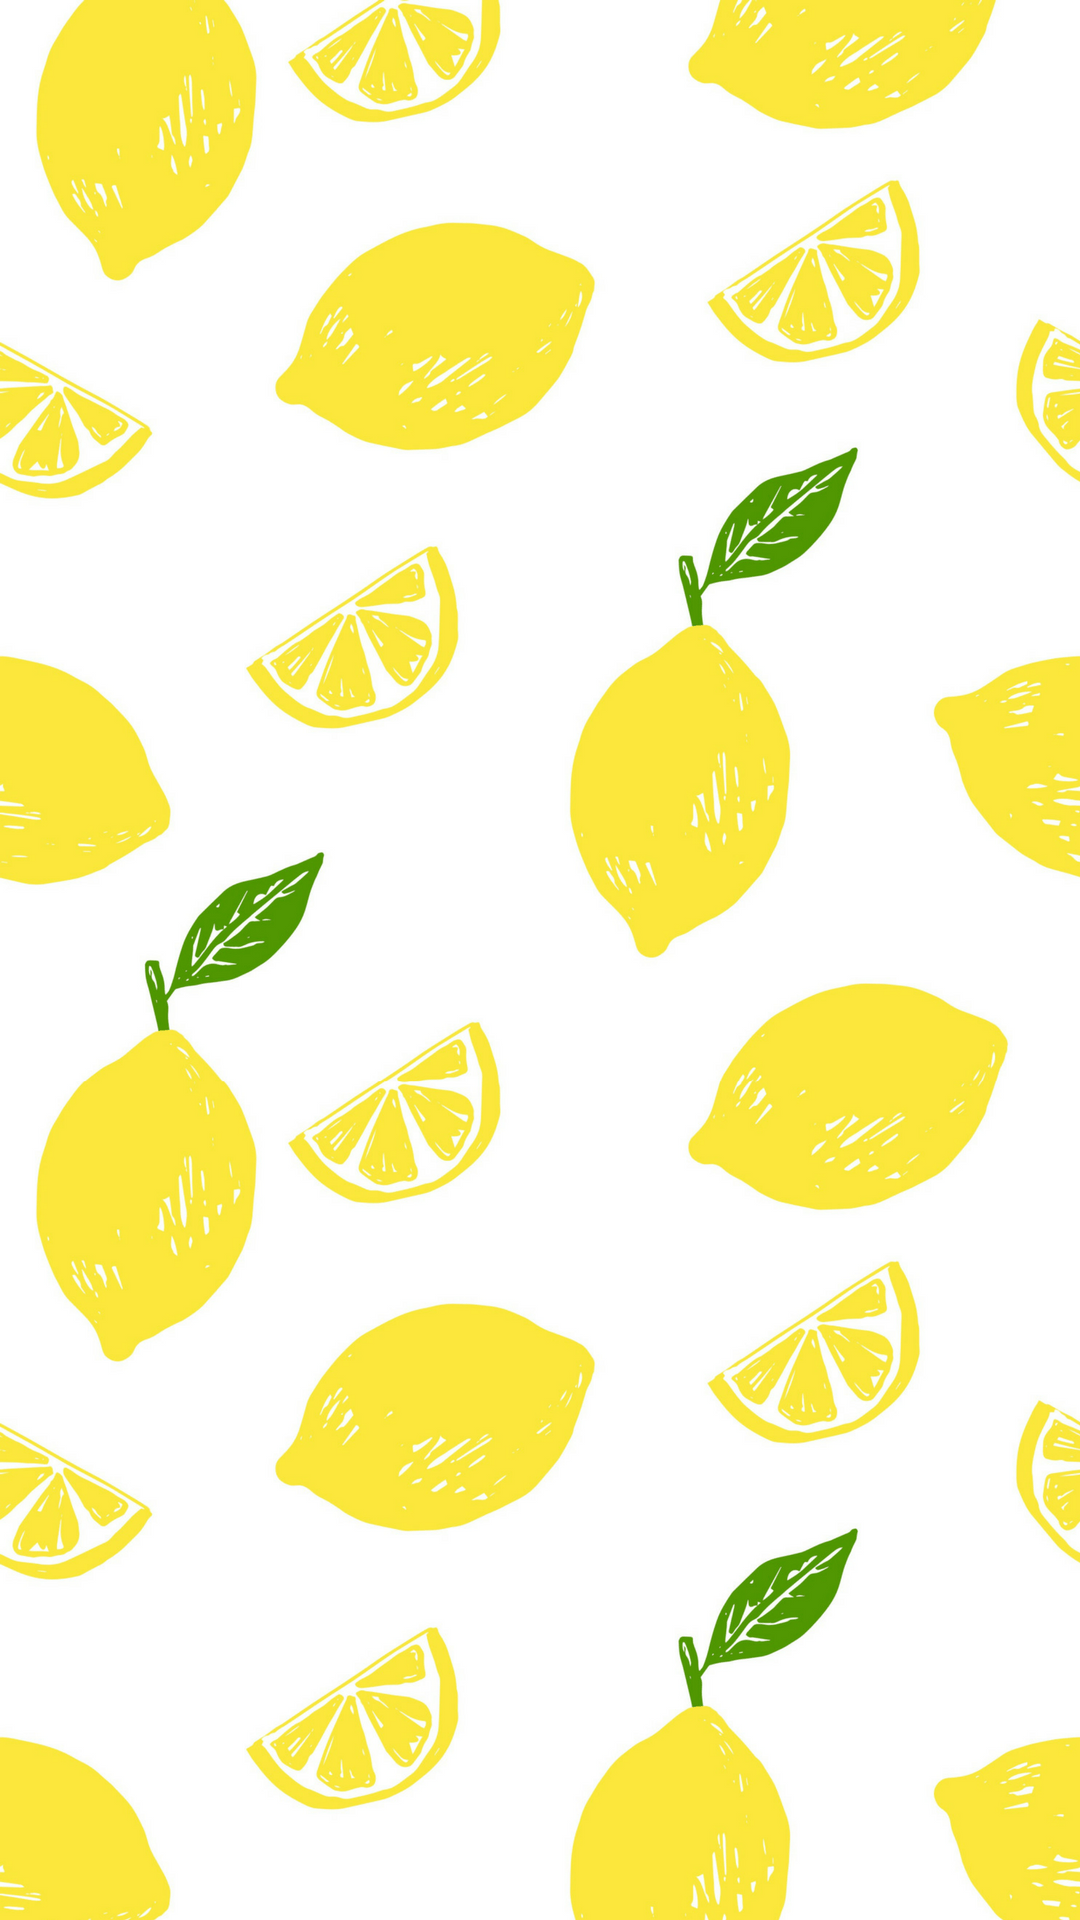 نقاشی فانتزی و گوگولی از لیمو های طلایی مخصوص بک گراند